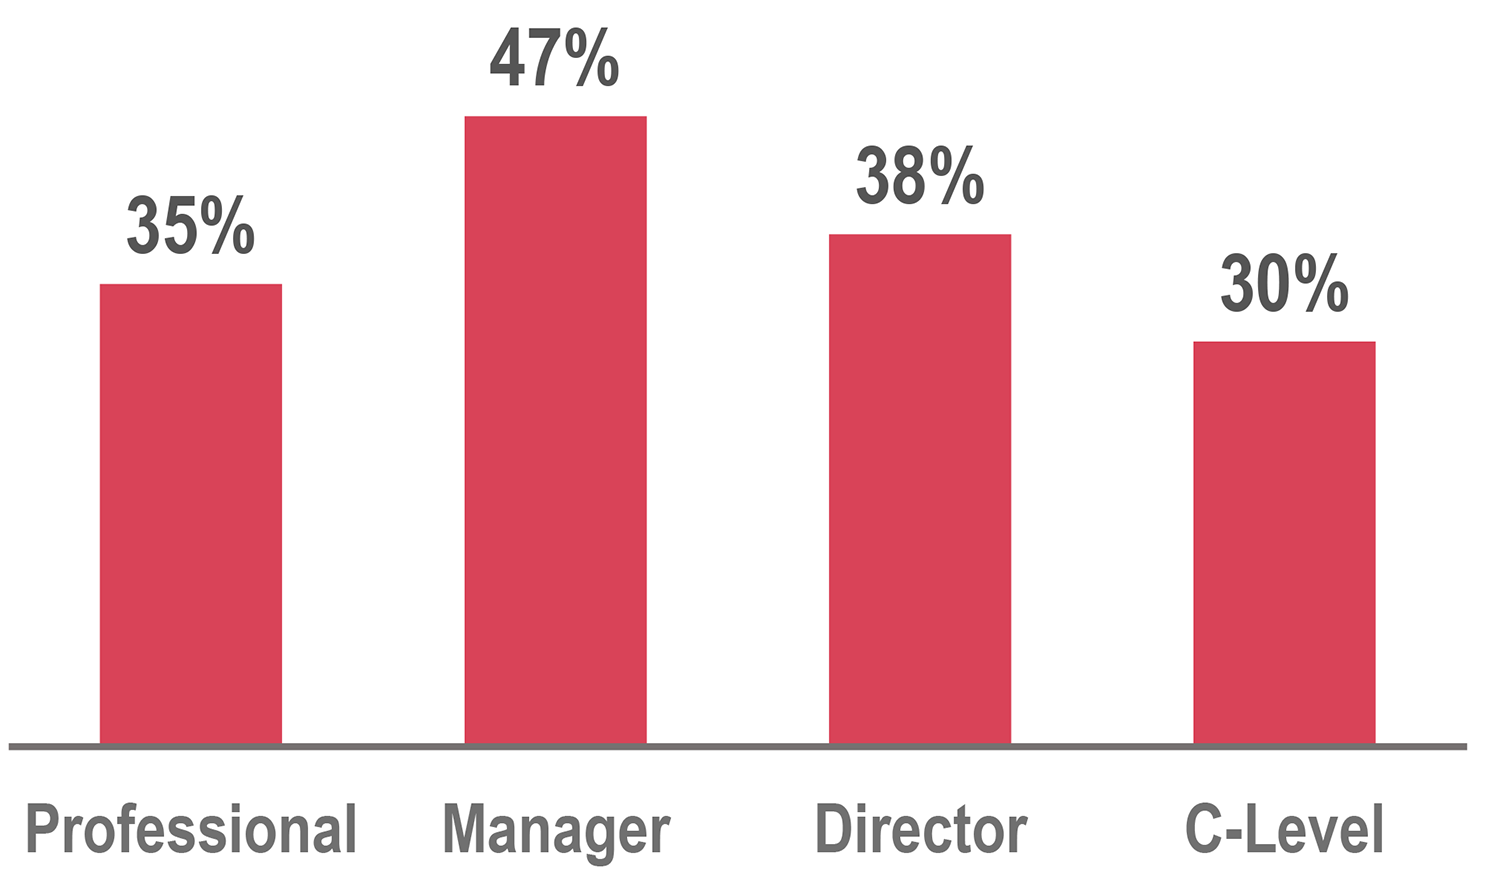 条形图:专业35%;经理47%;导演38%;c级30%。